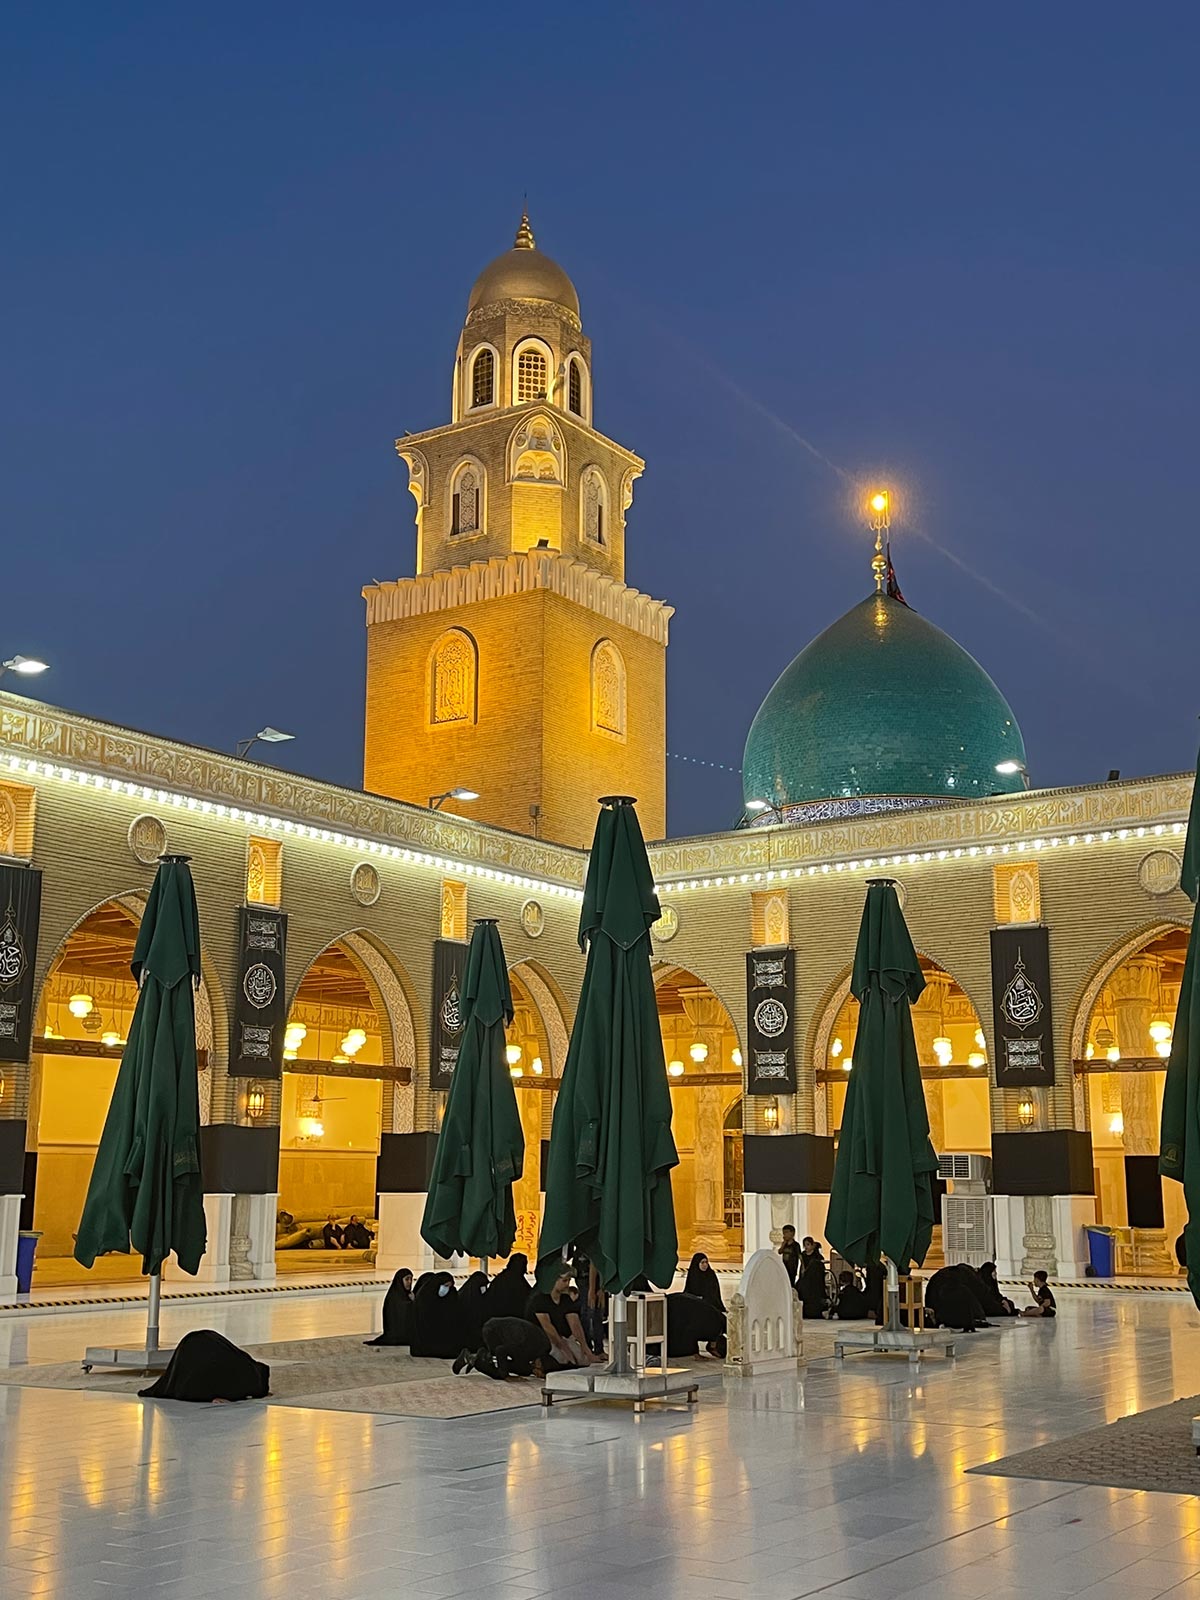 कुफ़ा मस्जिद, मुस्लिम इब्न अकील और हानी इब्न उरवा, कूफ़ा के तीर्थ